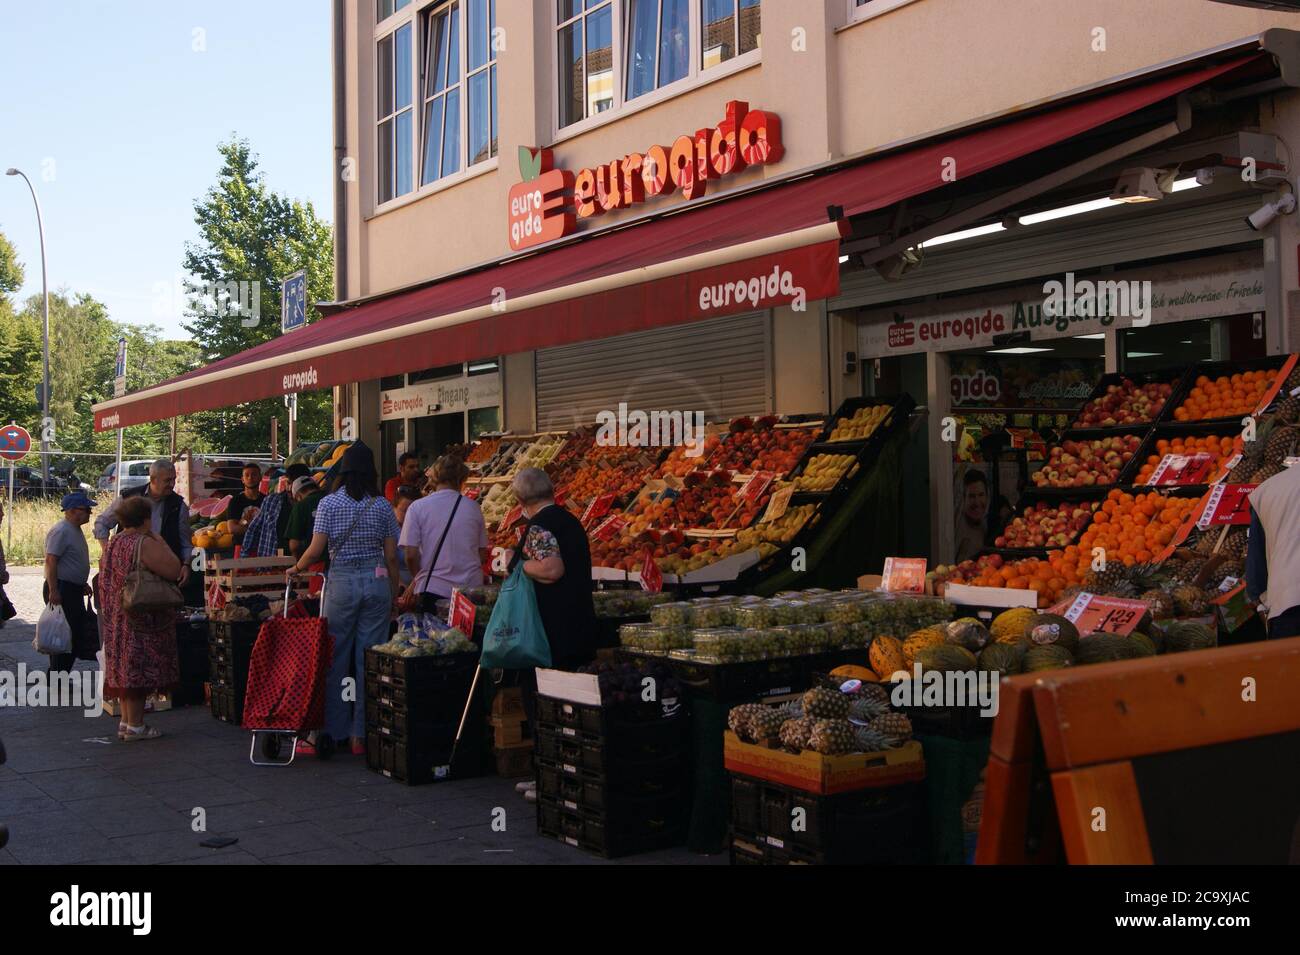 Supermarktkette eurogida, die überwiegend türkische Spezialitäten im Sortiment führt, en der Breiten Straße en Berlín-Spandau Foto de stock